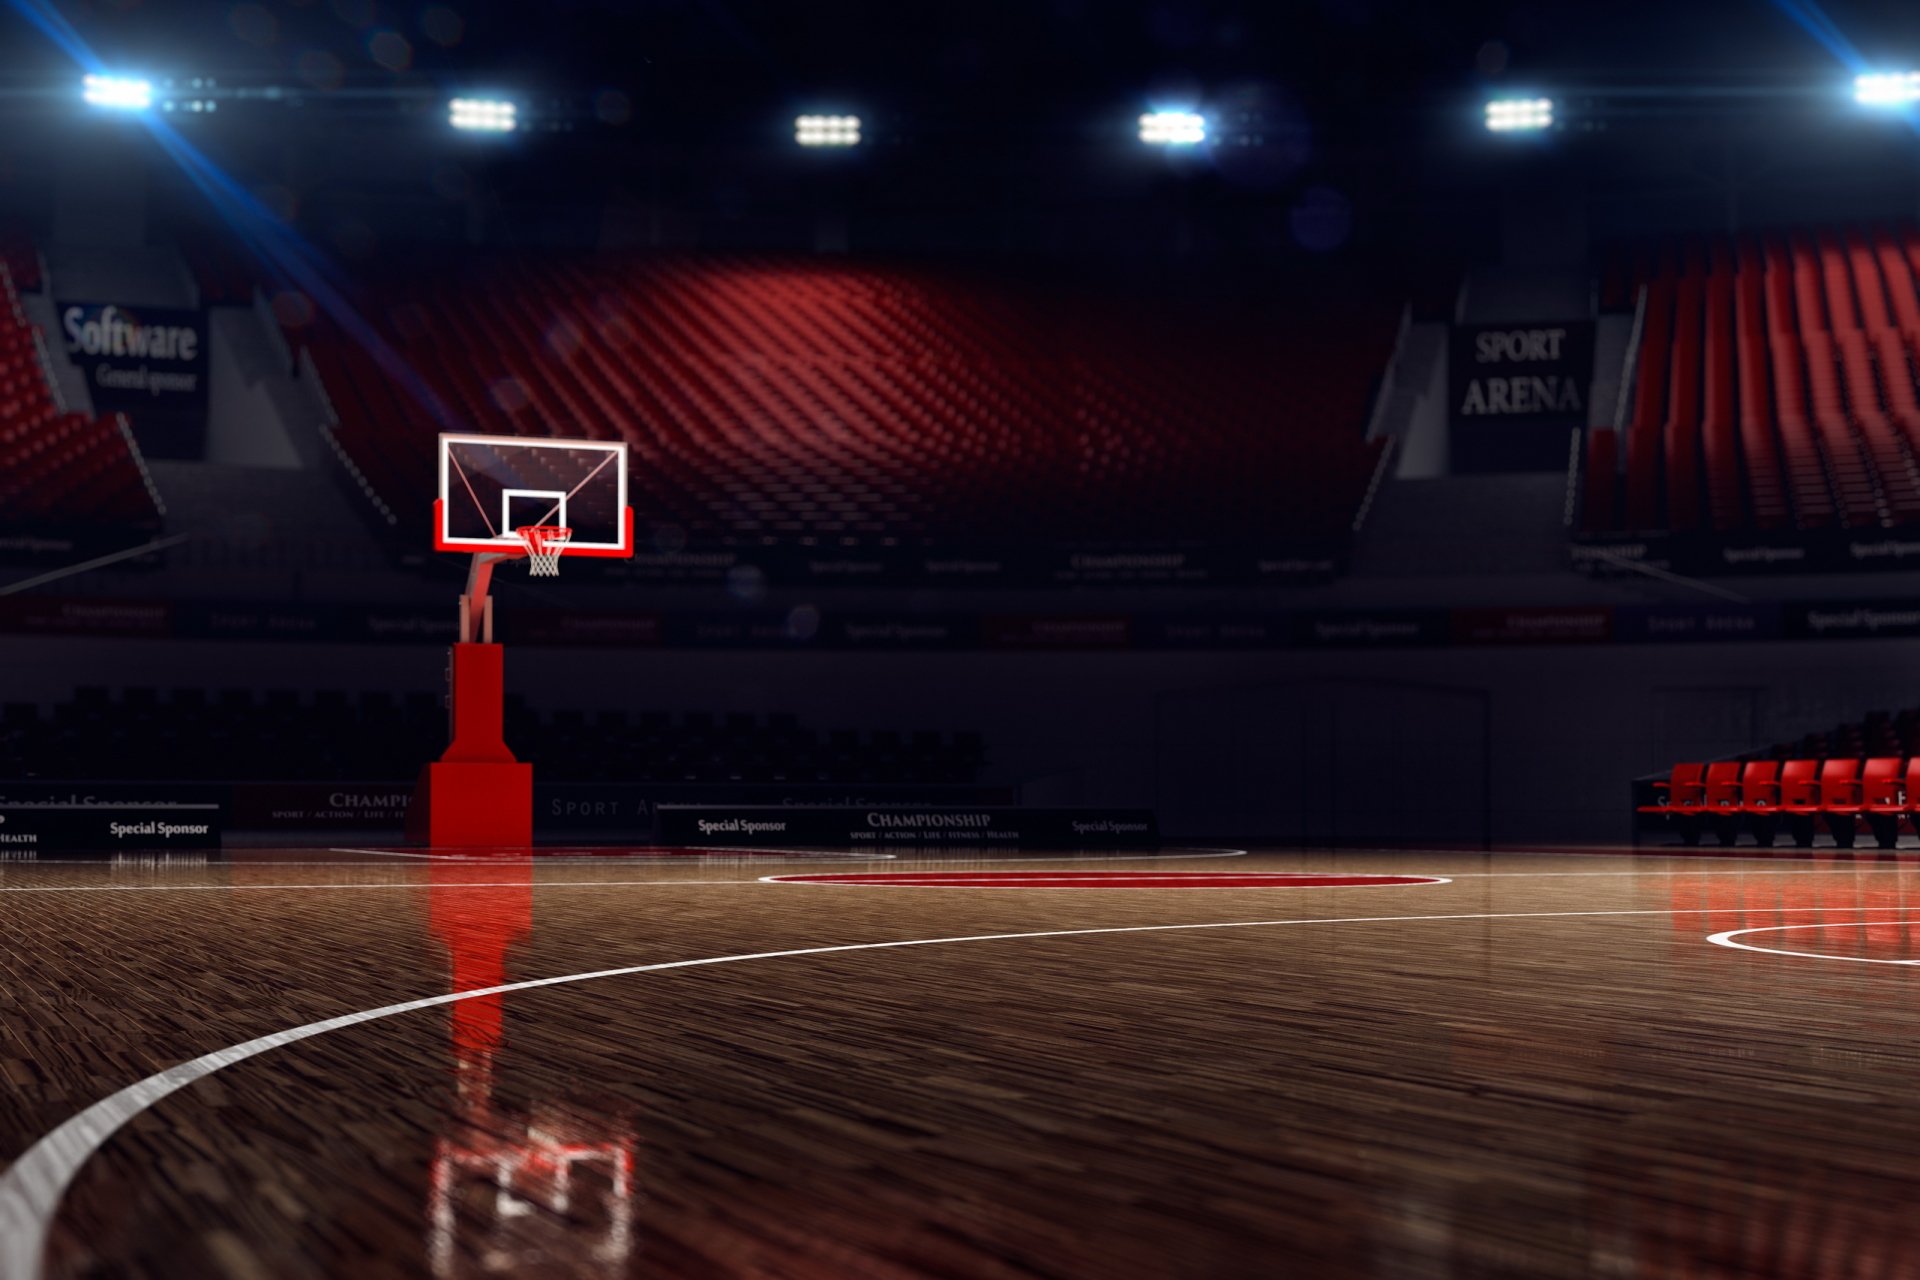 バスケットボールコート壁紙hd,赤,スクリーンショット,pcゲーム,スタジアム,バスケットボール